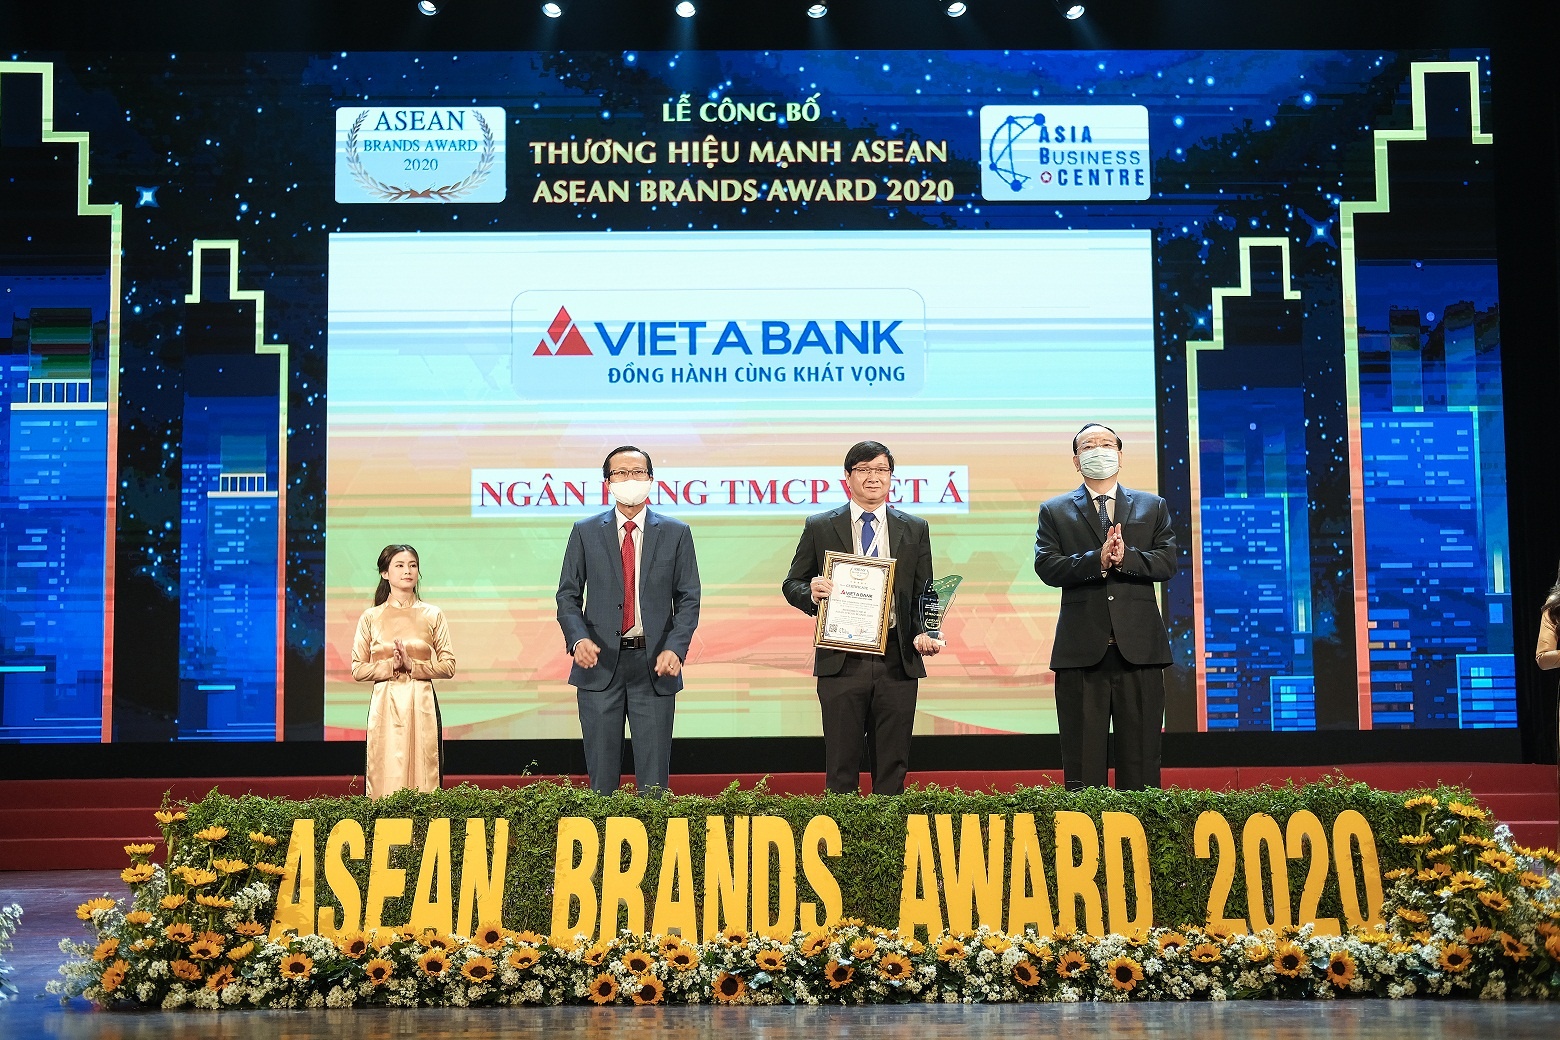 VietABank và hành trình tới "Thương hiệu mạnh ASEAN"